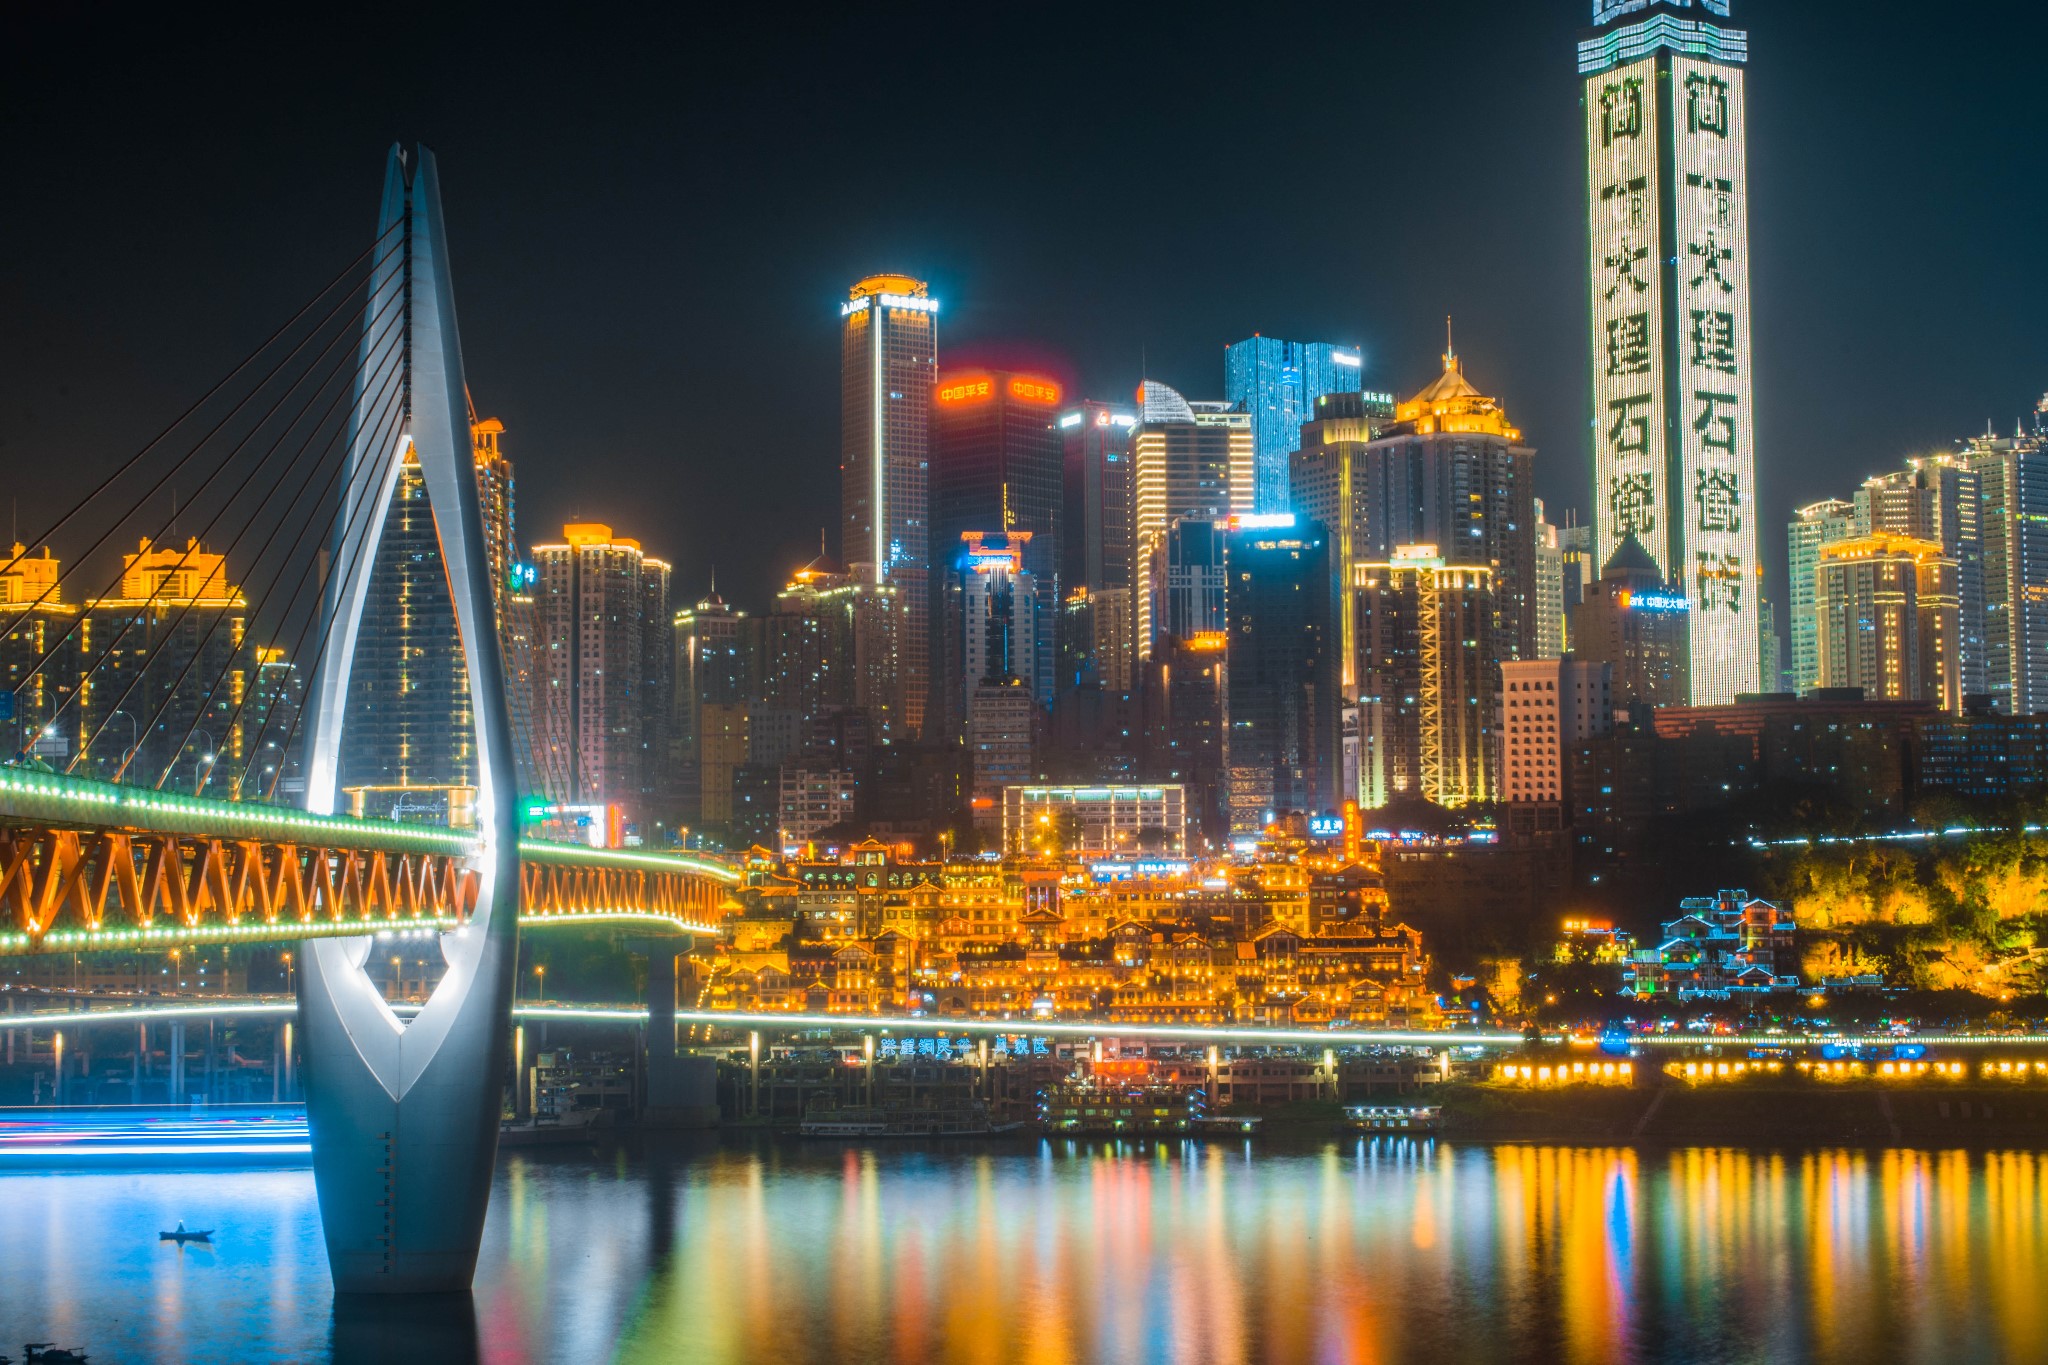 图:同框千厮门大桥与洪崖洞,是重庆夜景拍摄最为热门的素材之一.